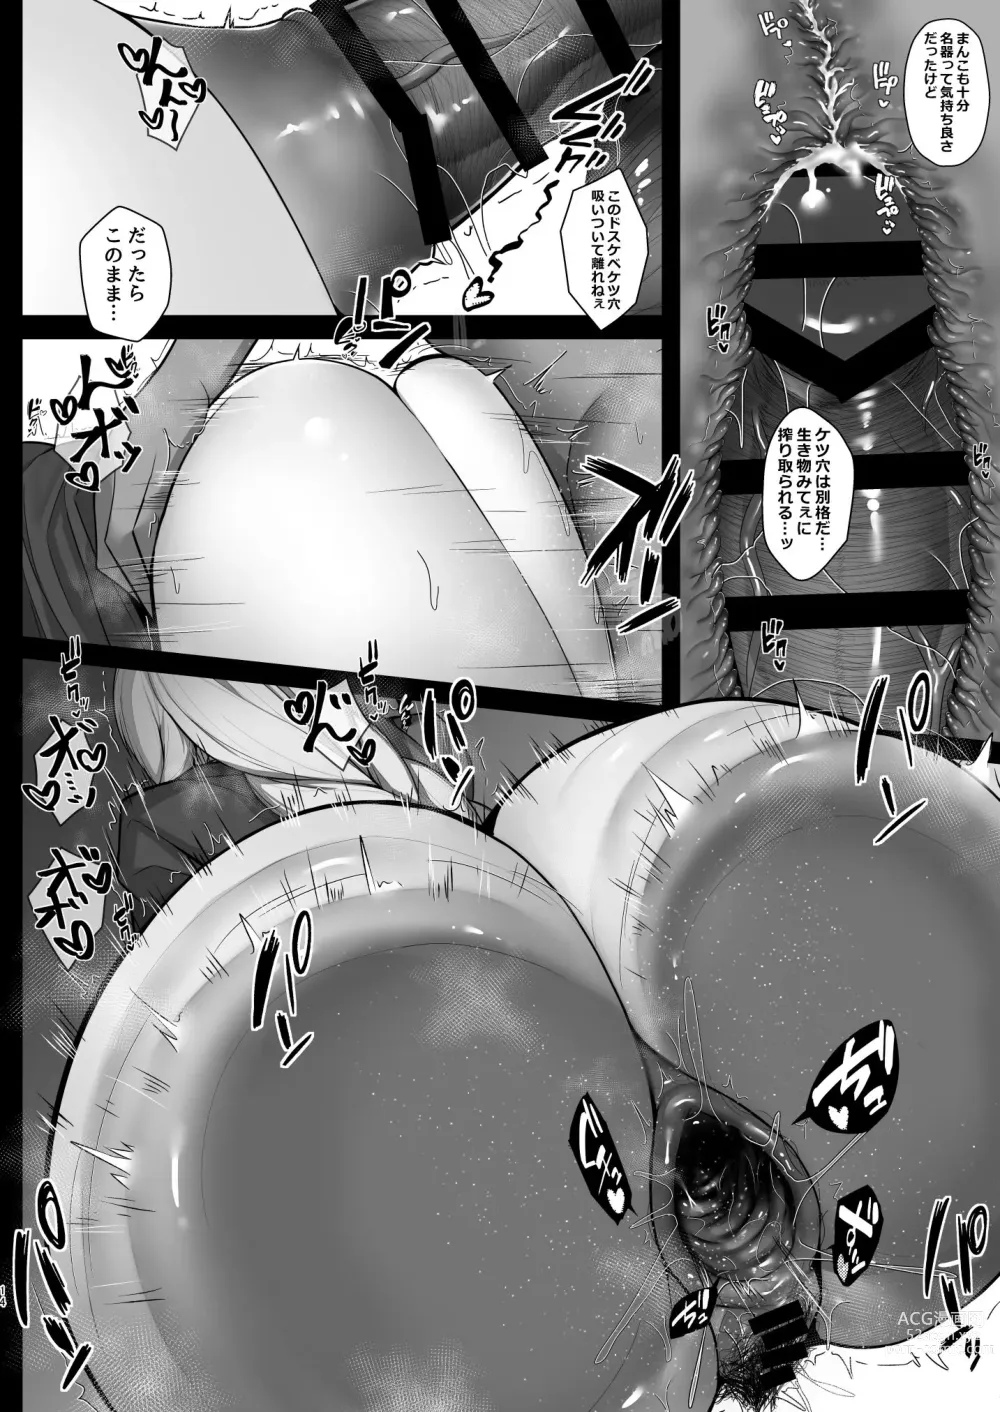 Page 12 of doujinshi Muramura wa Kanja de. 4